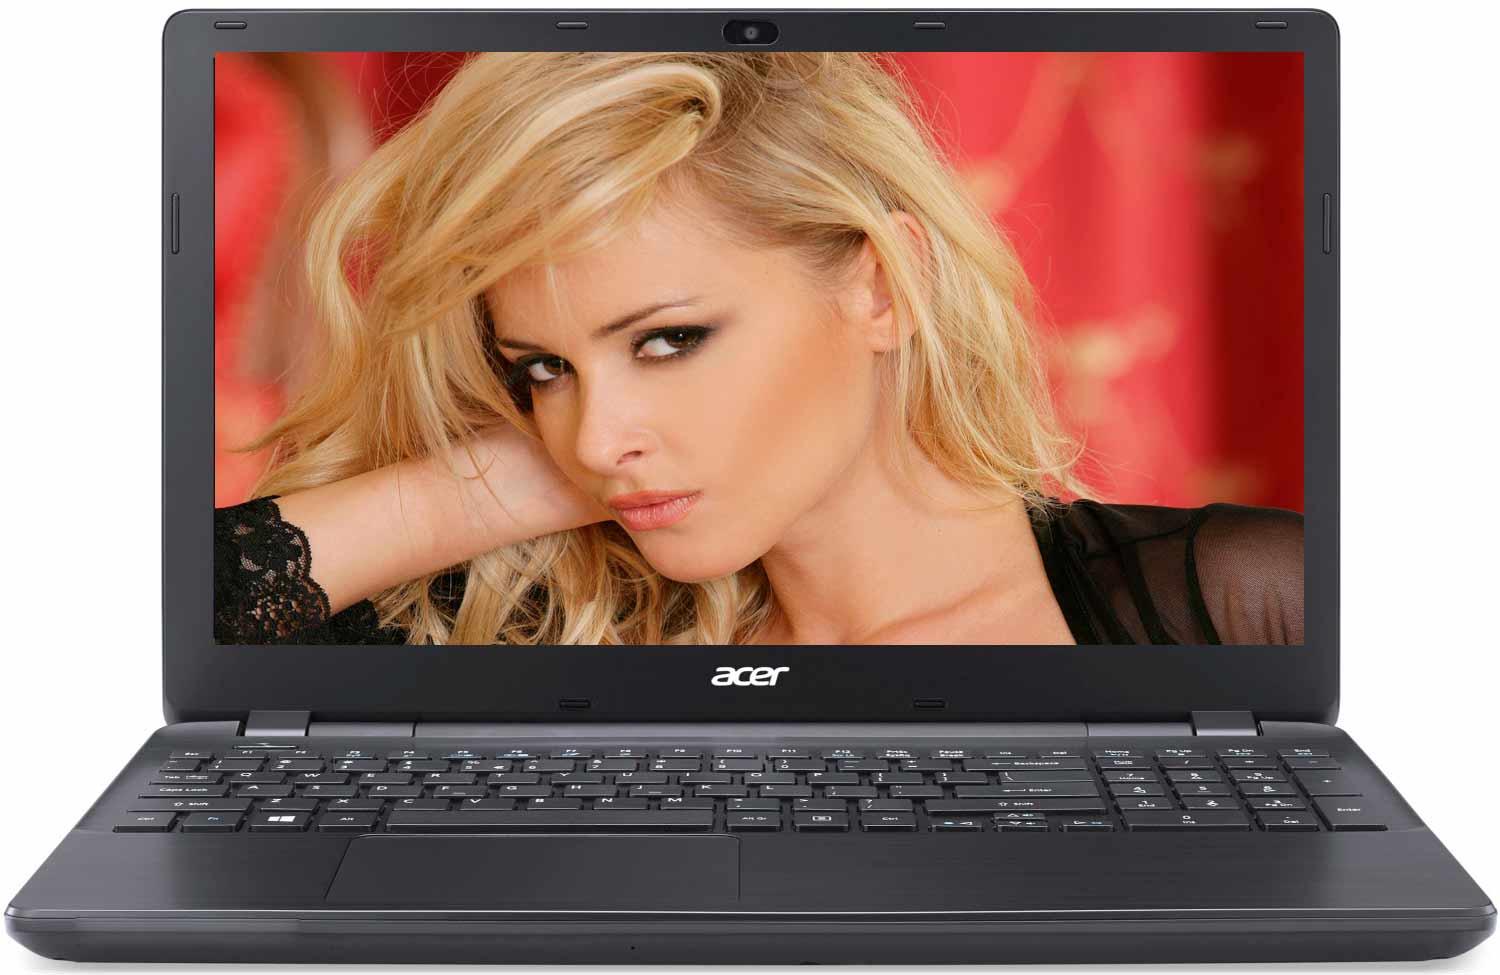   Acer Extensa EX2519-C426 (NX.EFAER.098)  1